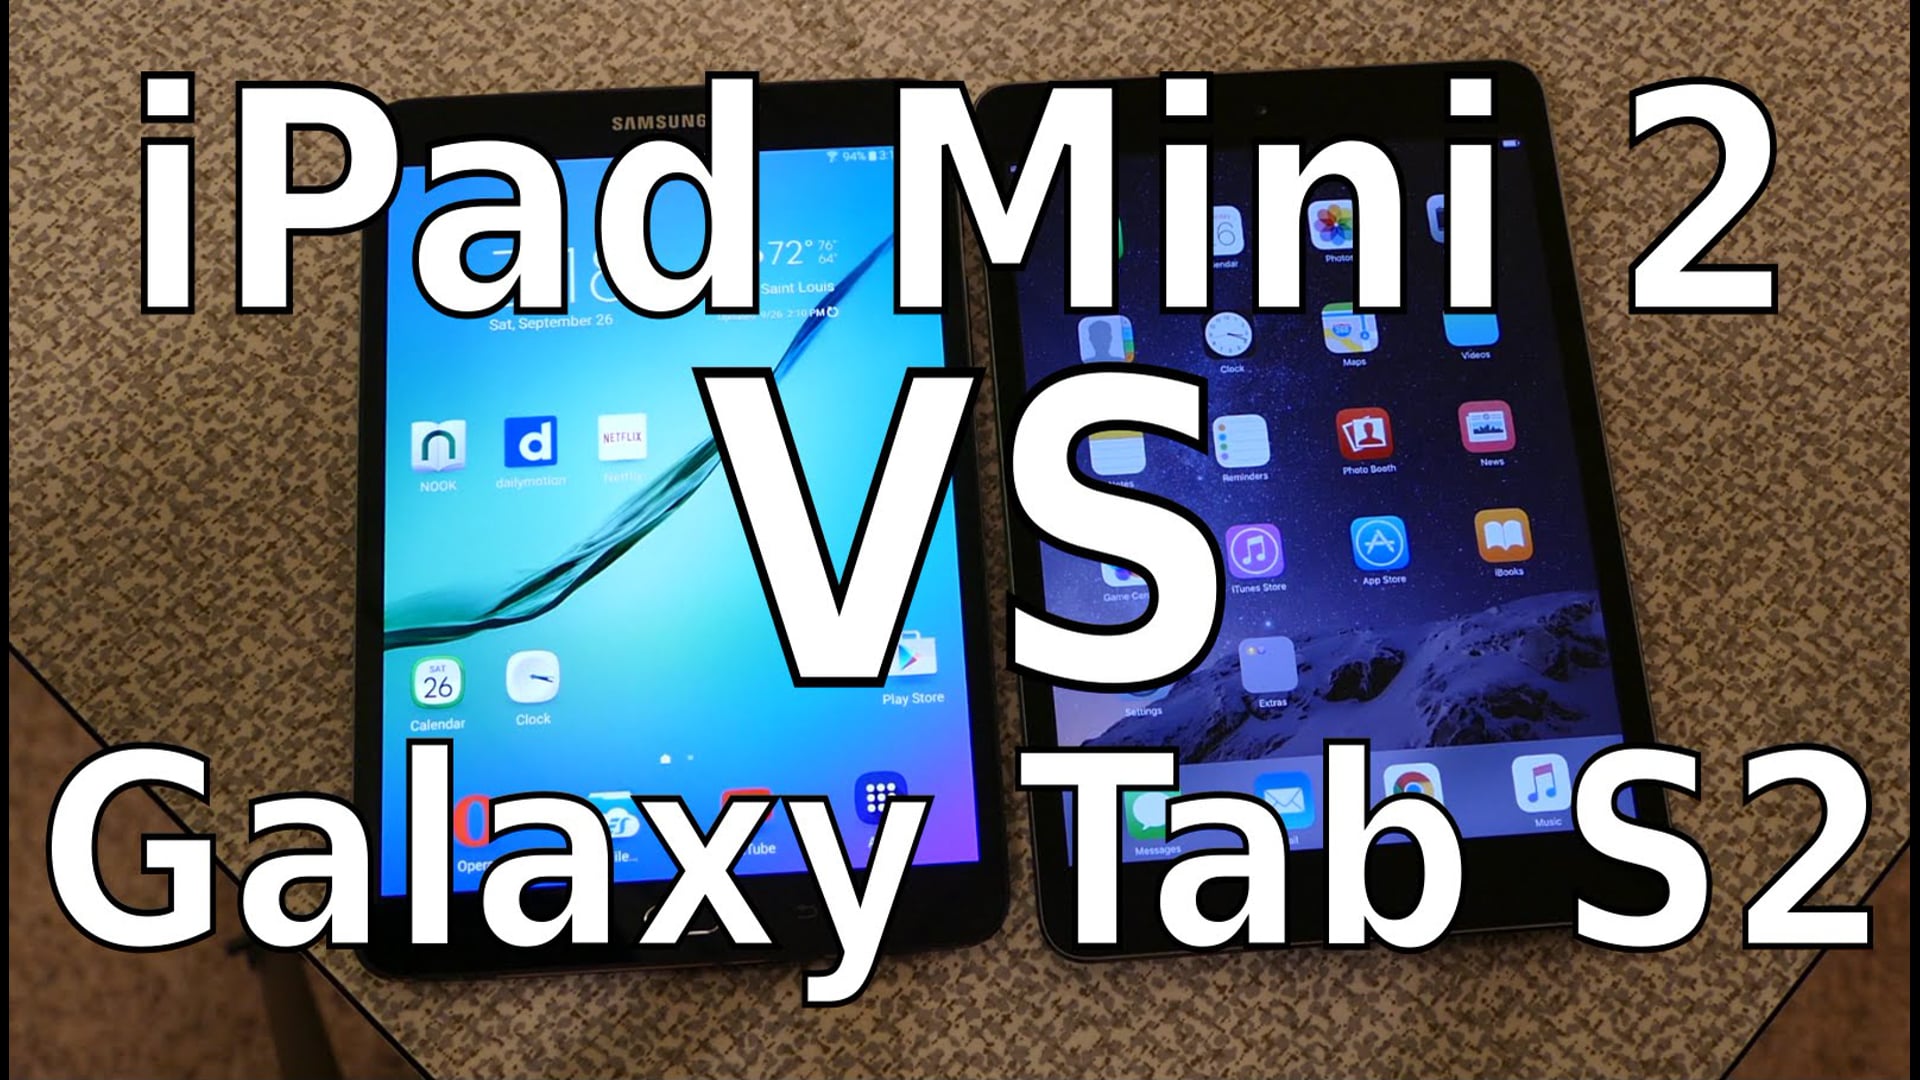 iPad Mini 2 vs Galaxy Tab S2 8.0